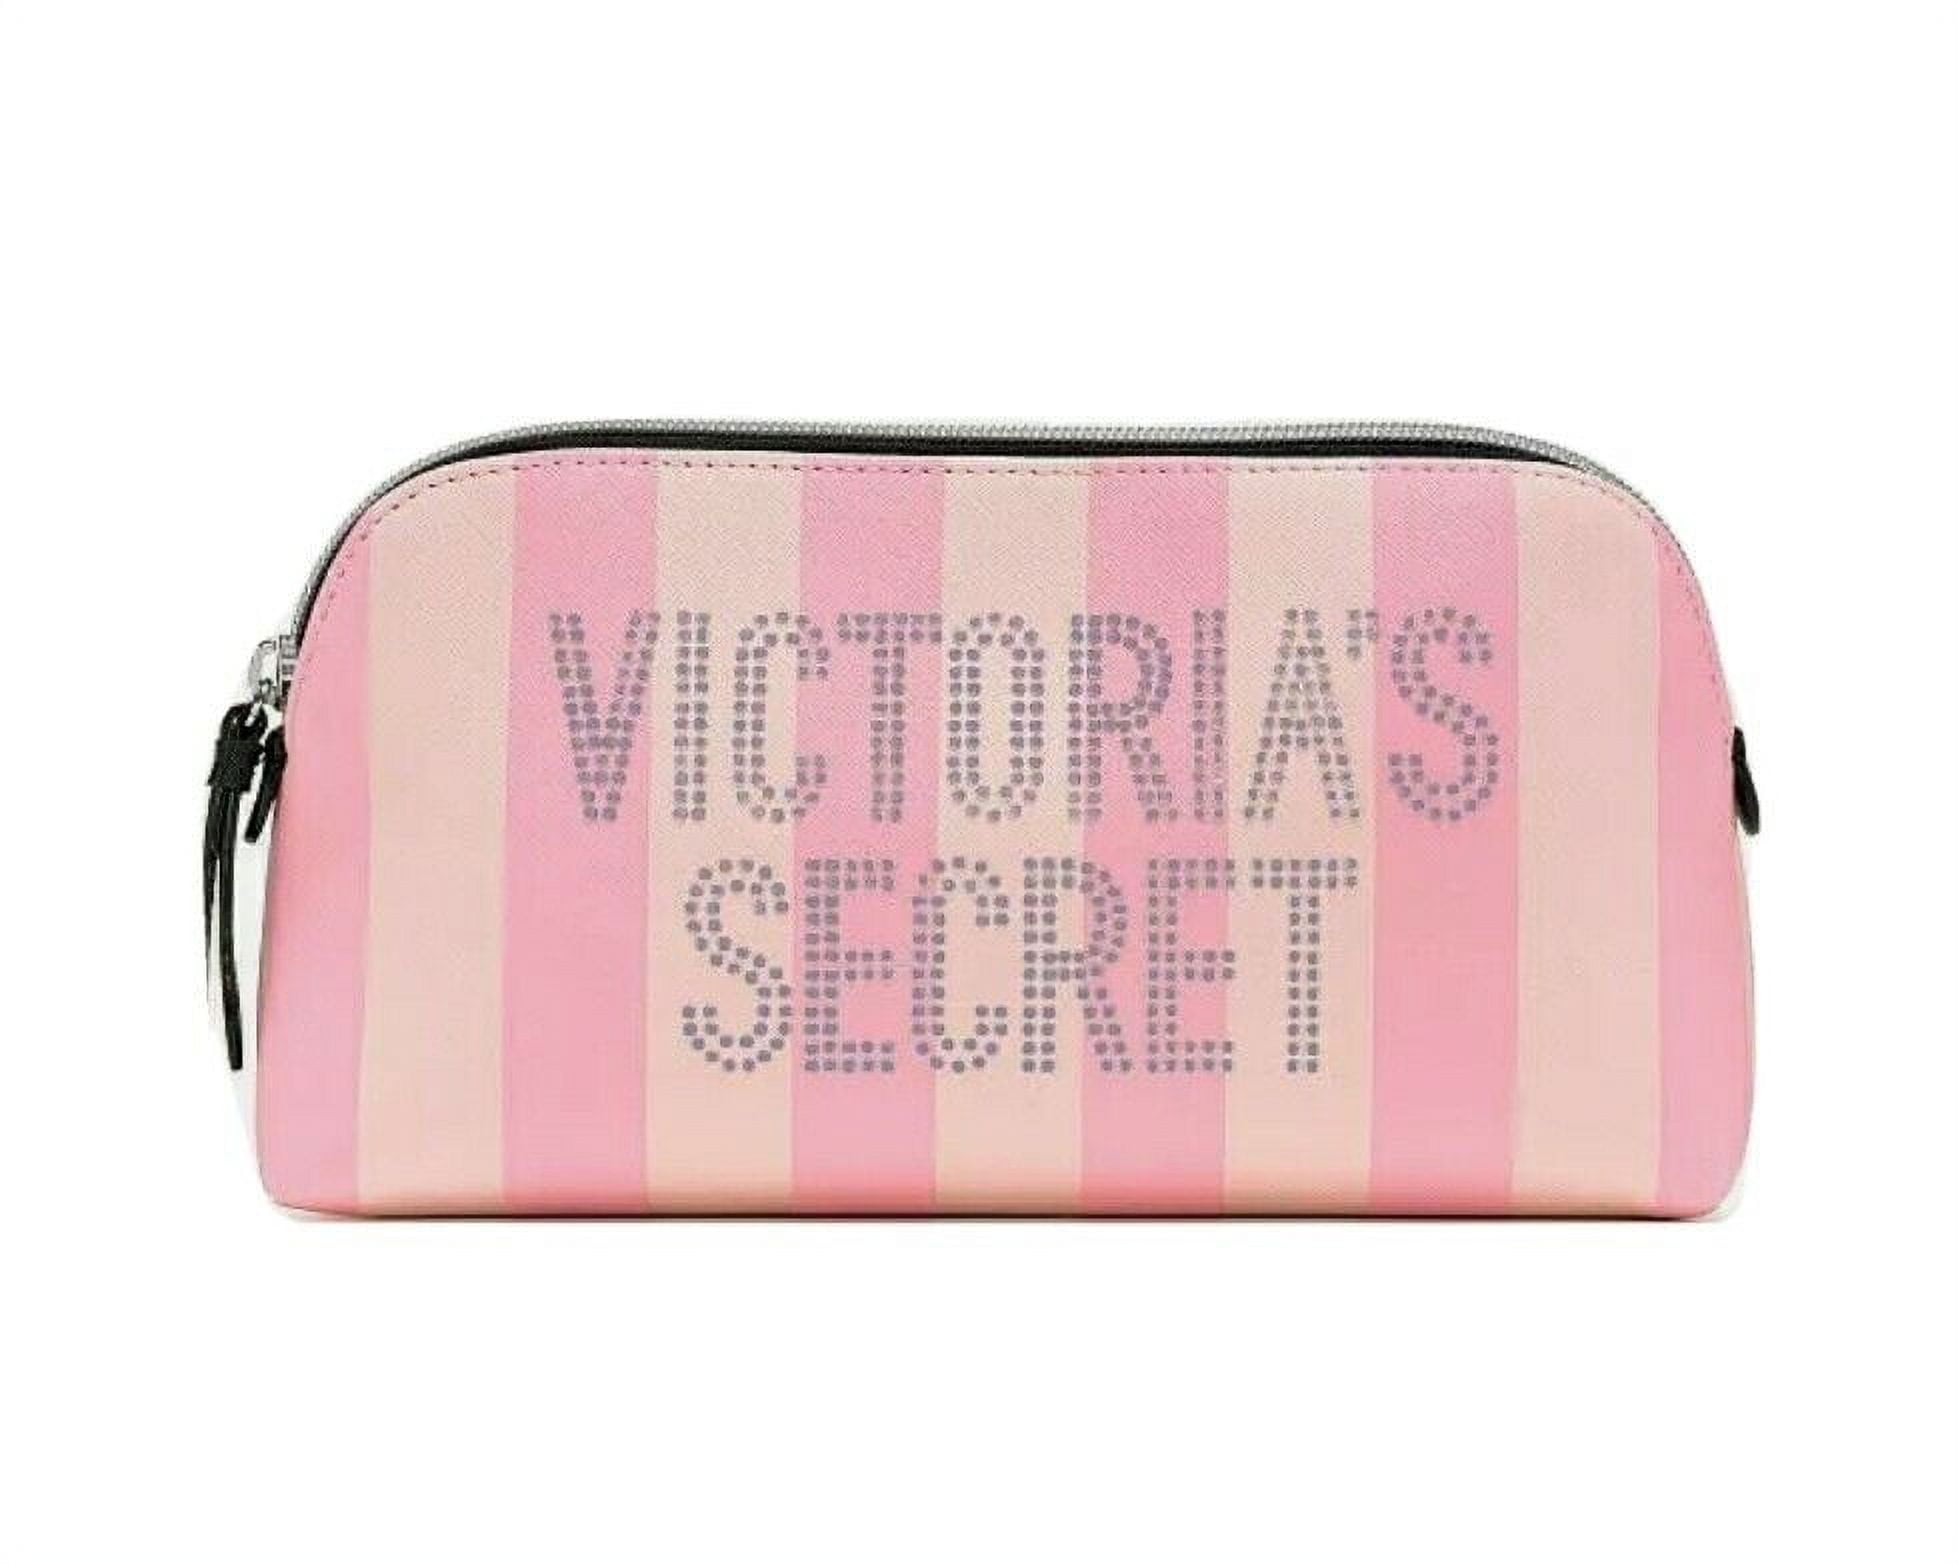 Victoria's Secret Cosmetic Bag*Glitter*Pink*Rare&Cute* - Fort